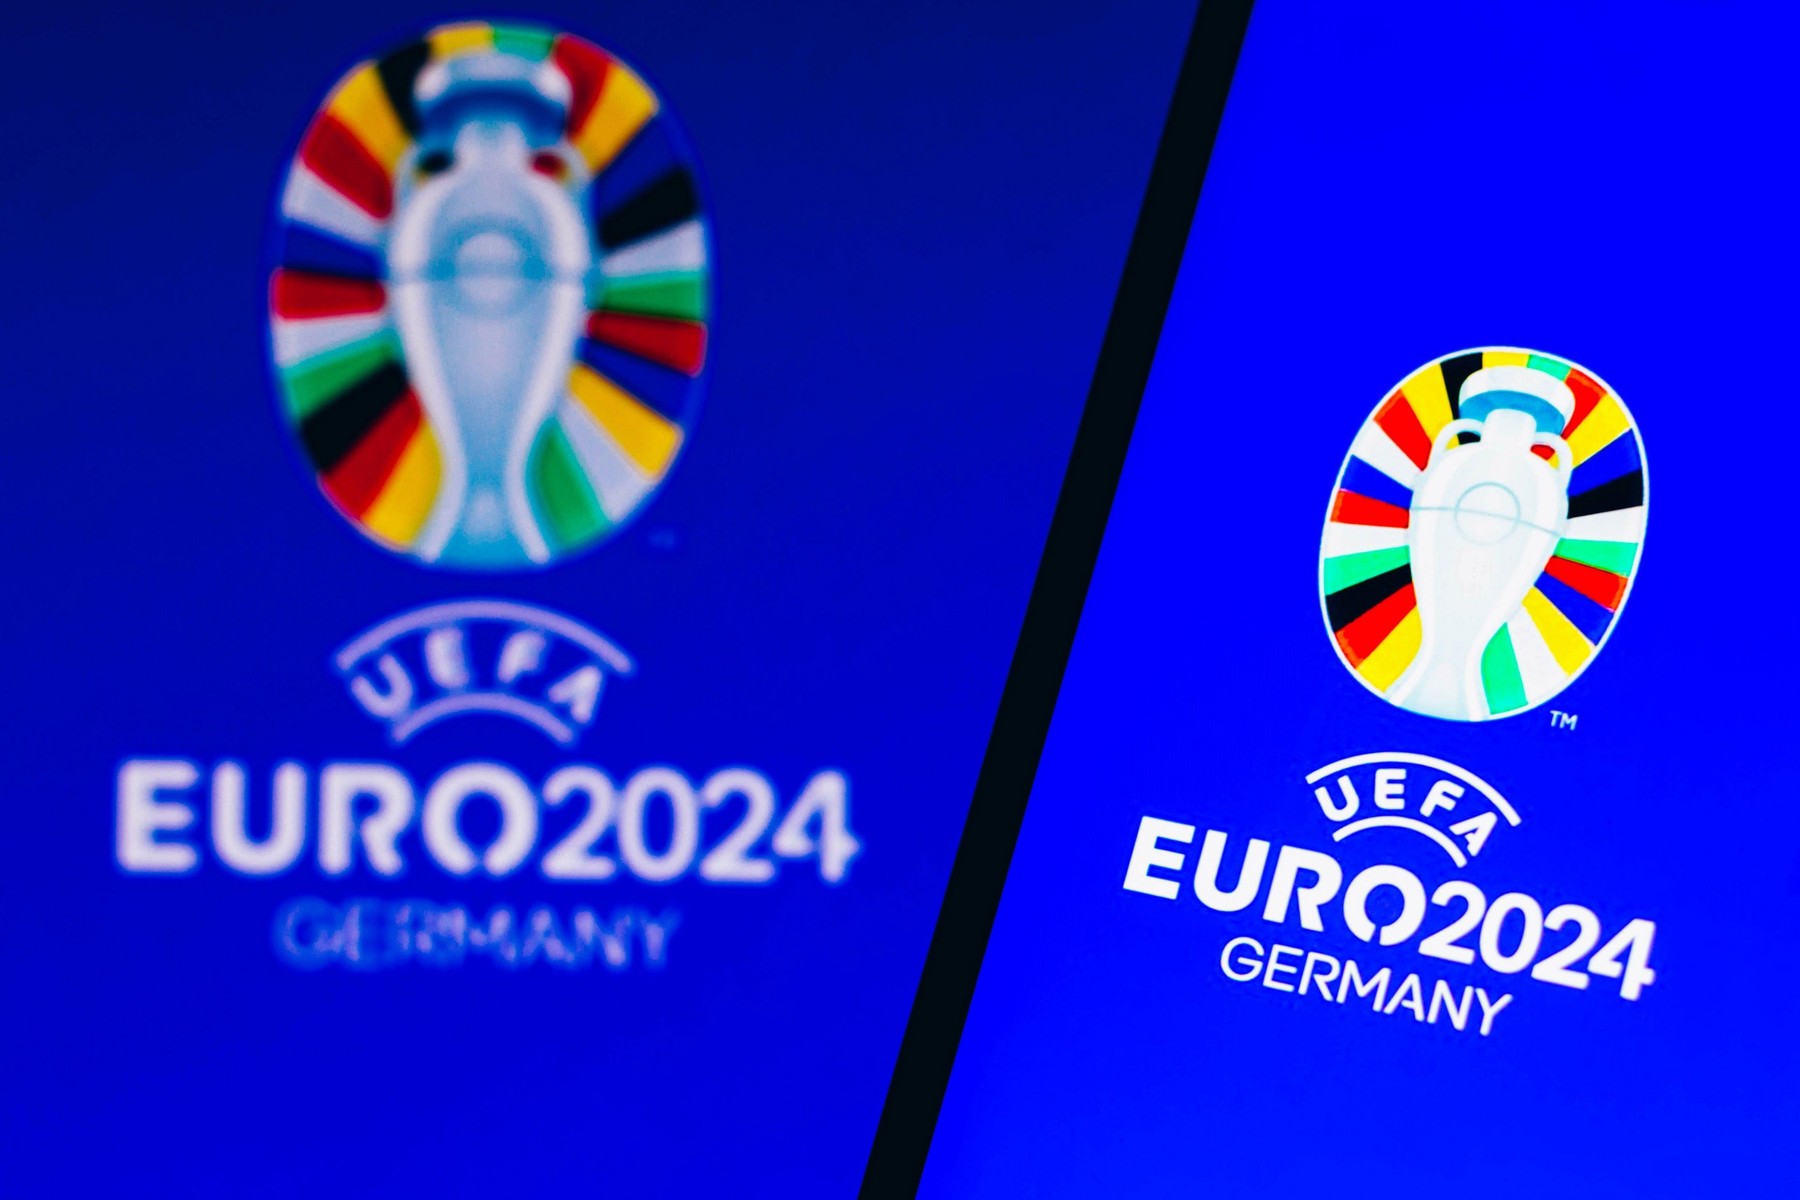 EURO 2024 | Spania - Scoția, LIVE VIDEO, 21:45, DGS 1, Croația -Turcia, LIVE VIDEO, 21:45, DGS 2. Cinci partide pe canalele Digi Sport